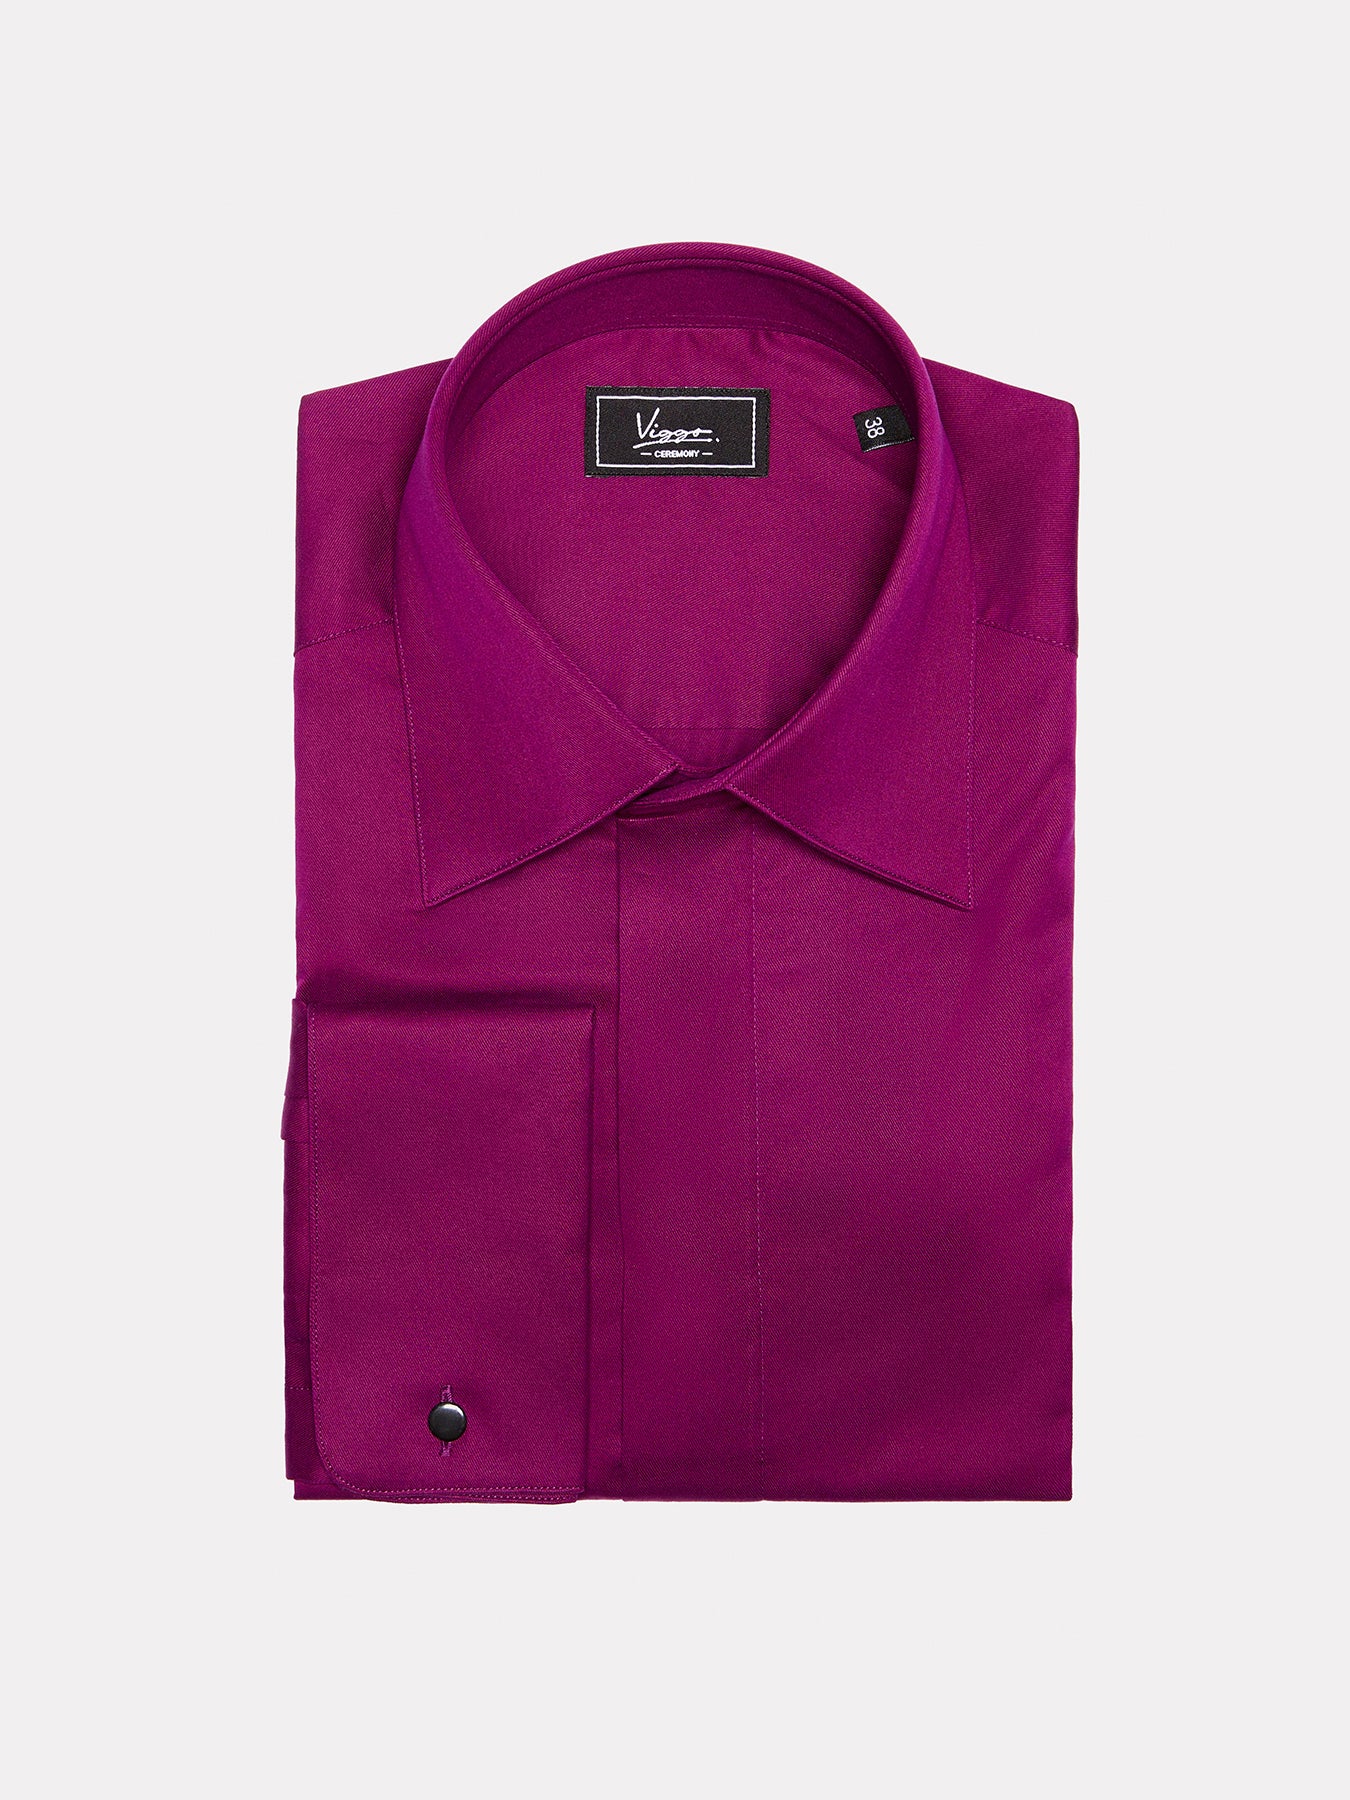 隠しボタンが付いた紫色のシャツ